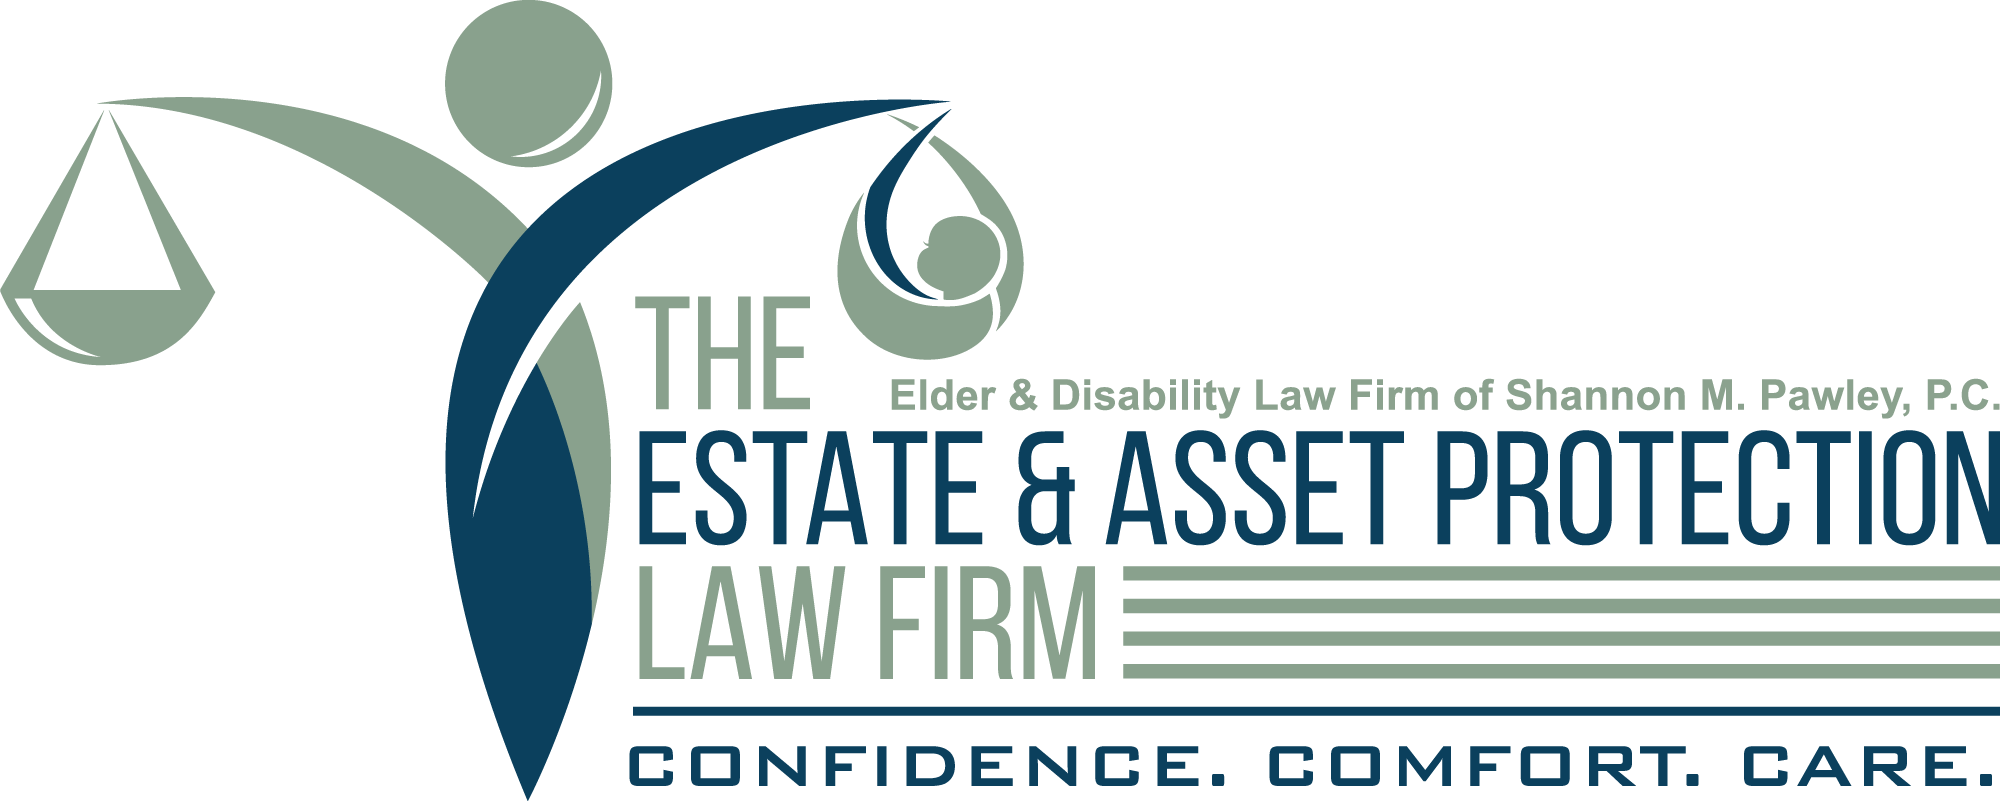 Image of veterans benefits Medicaid estate planning Elder Law elder care attorney asset protection  on estate management asset protection law site